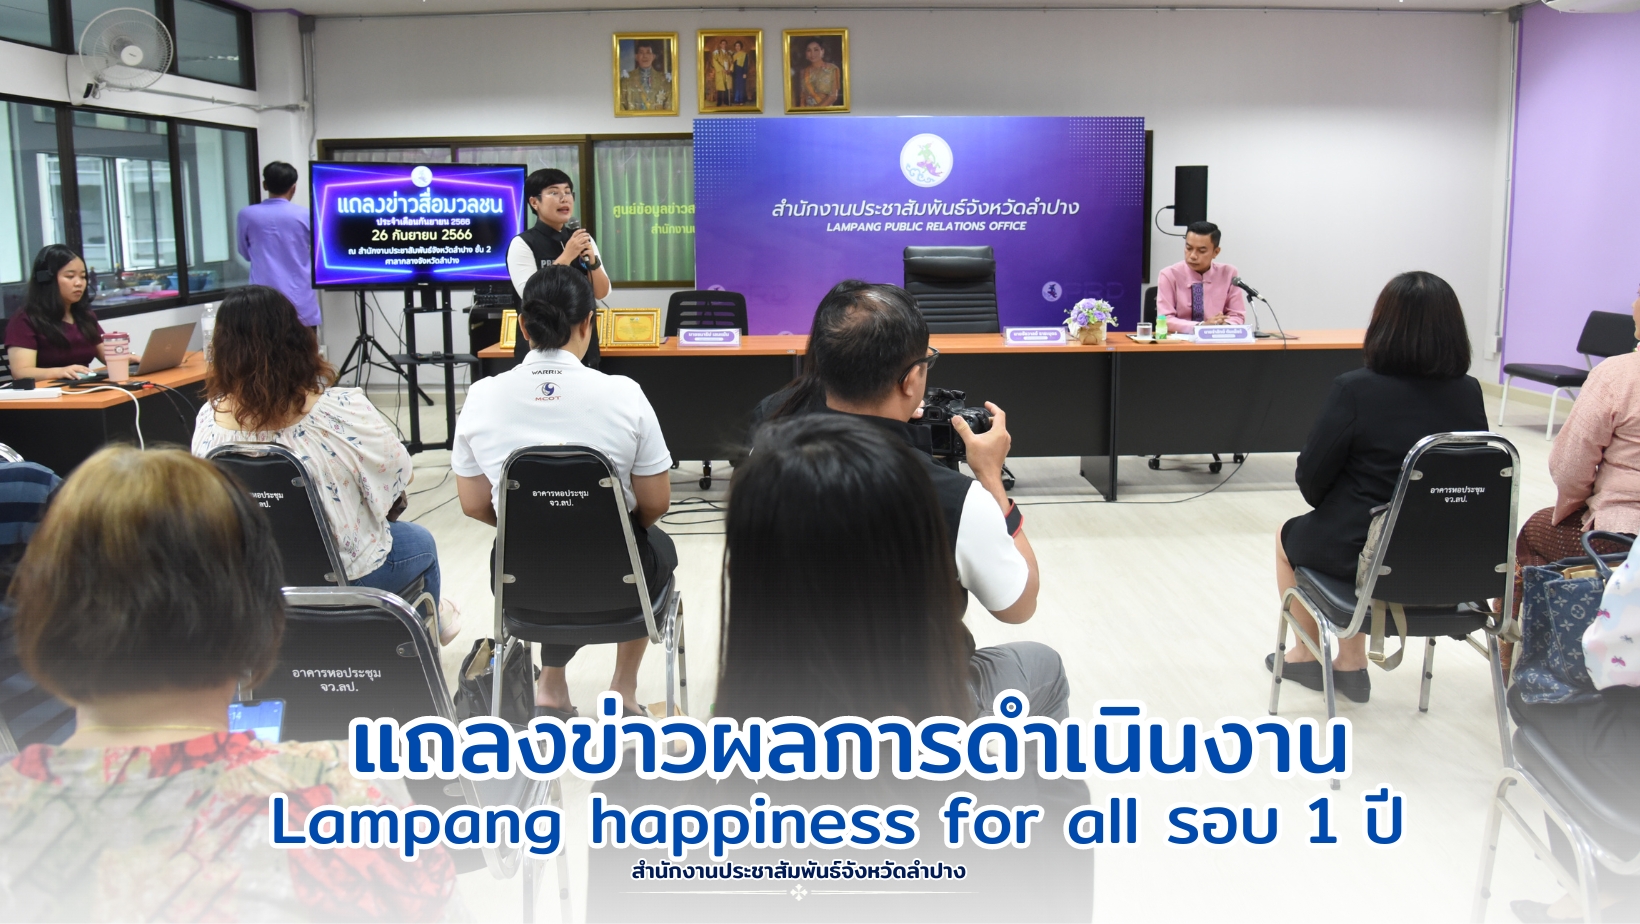 จ.ลำปาง จัดแถลงข่าวผลการดำเนินงาน "Lampang happiness for all" รอบ 1 ปี